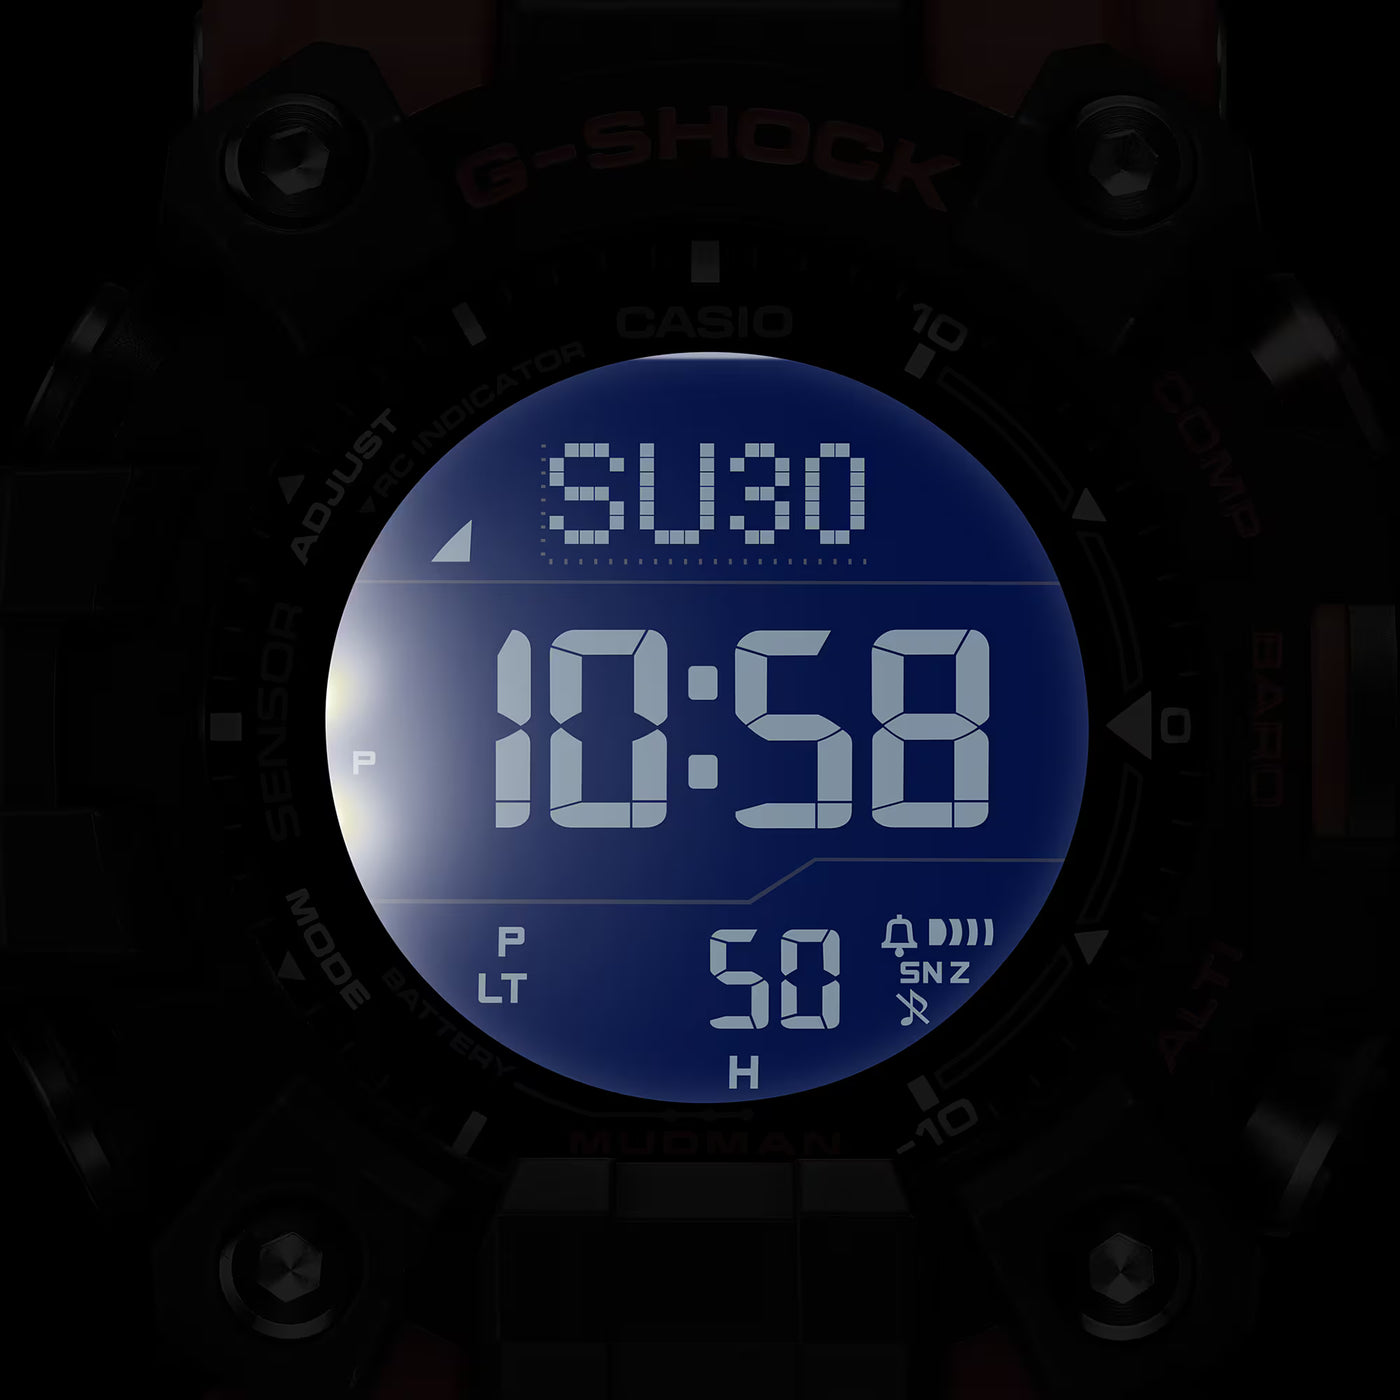 Casio GW-9500-1A4ER G-Shock